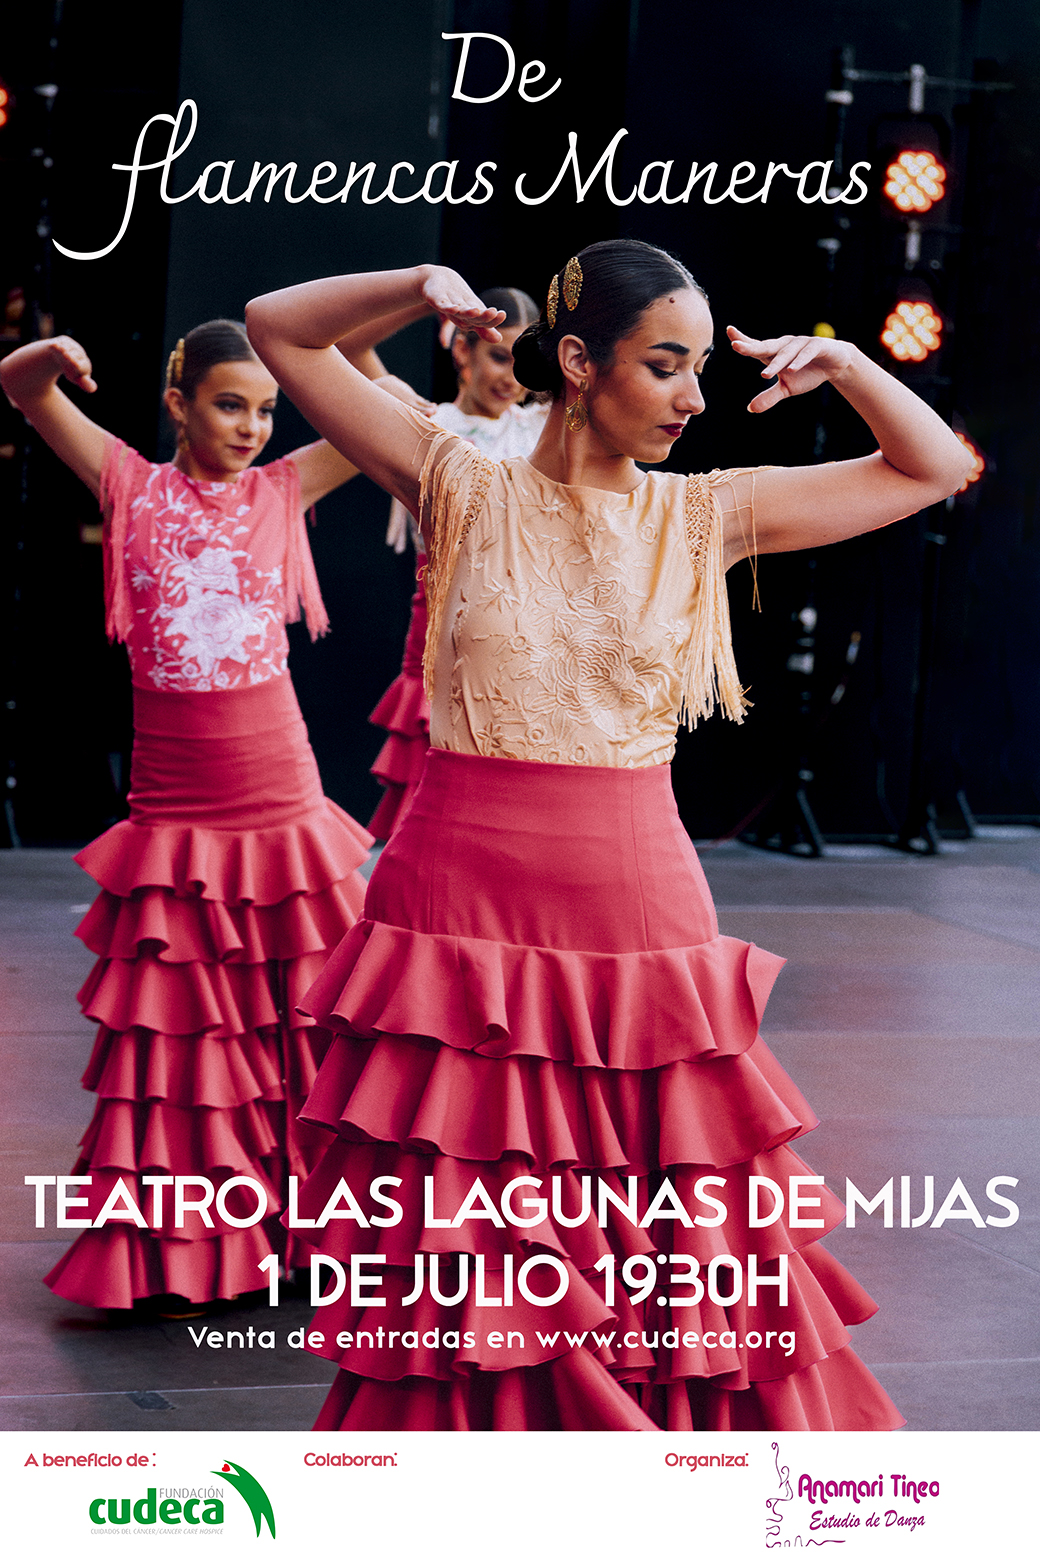 De Flamencas Maneras